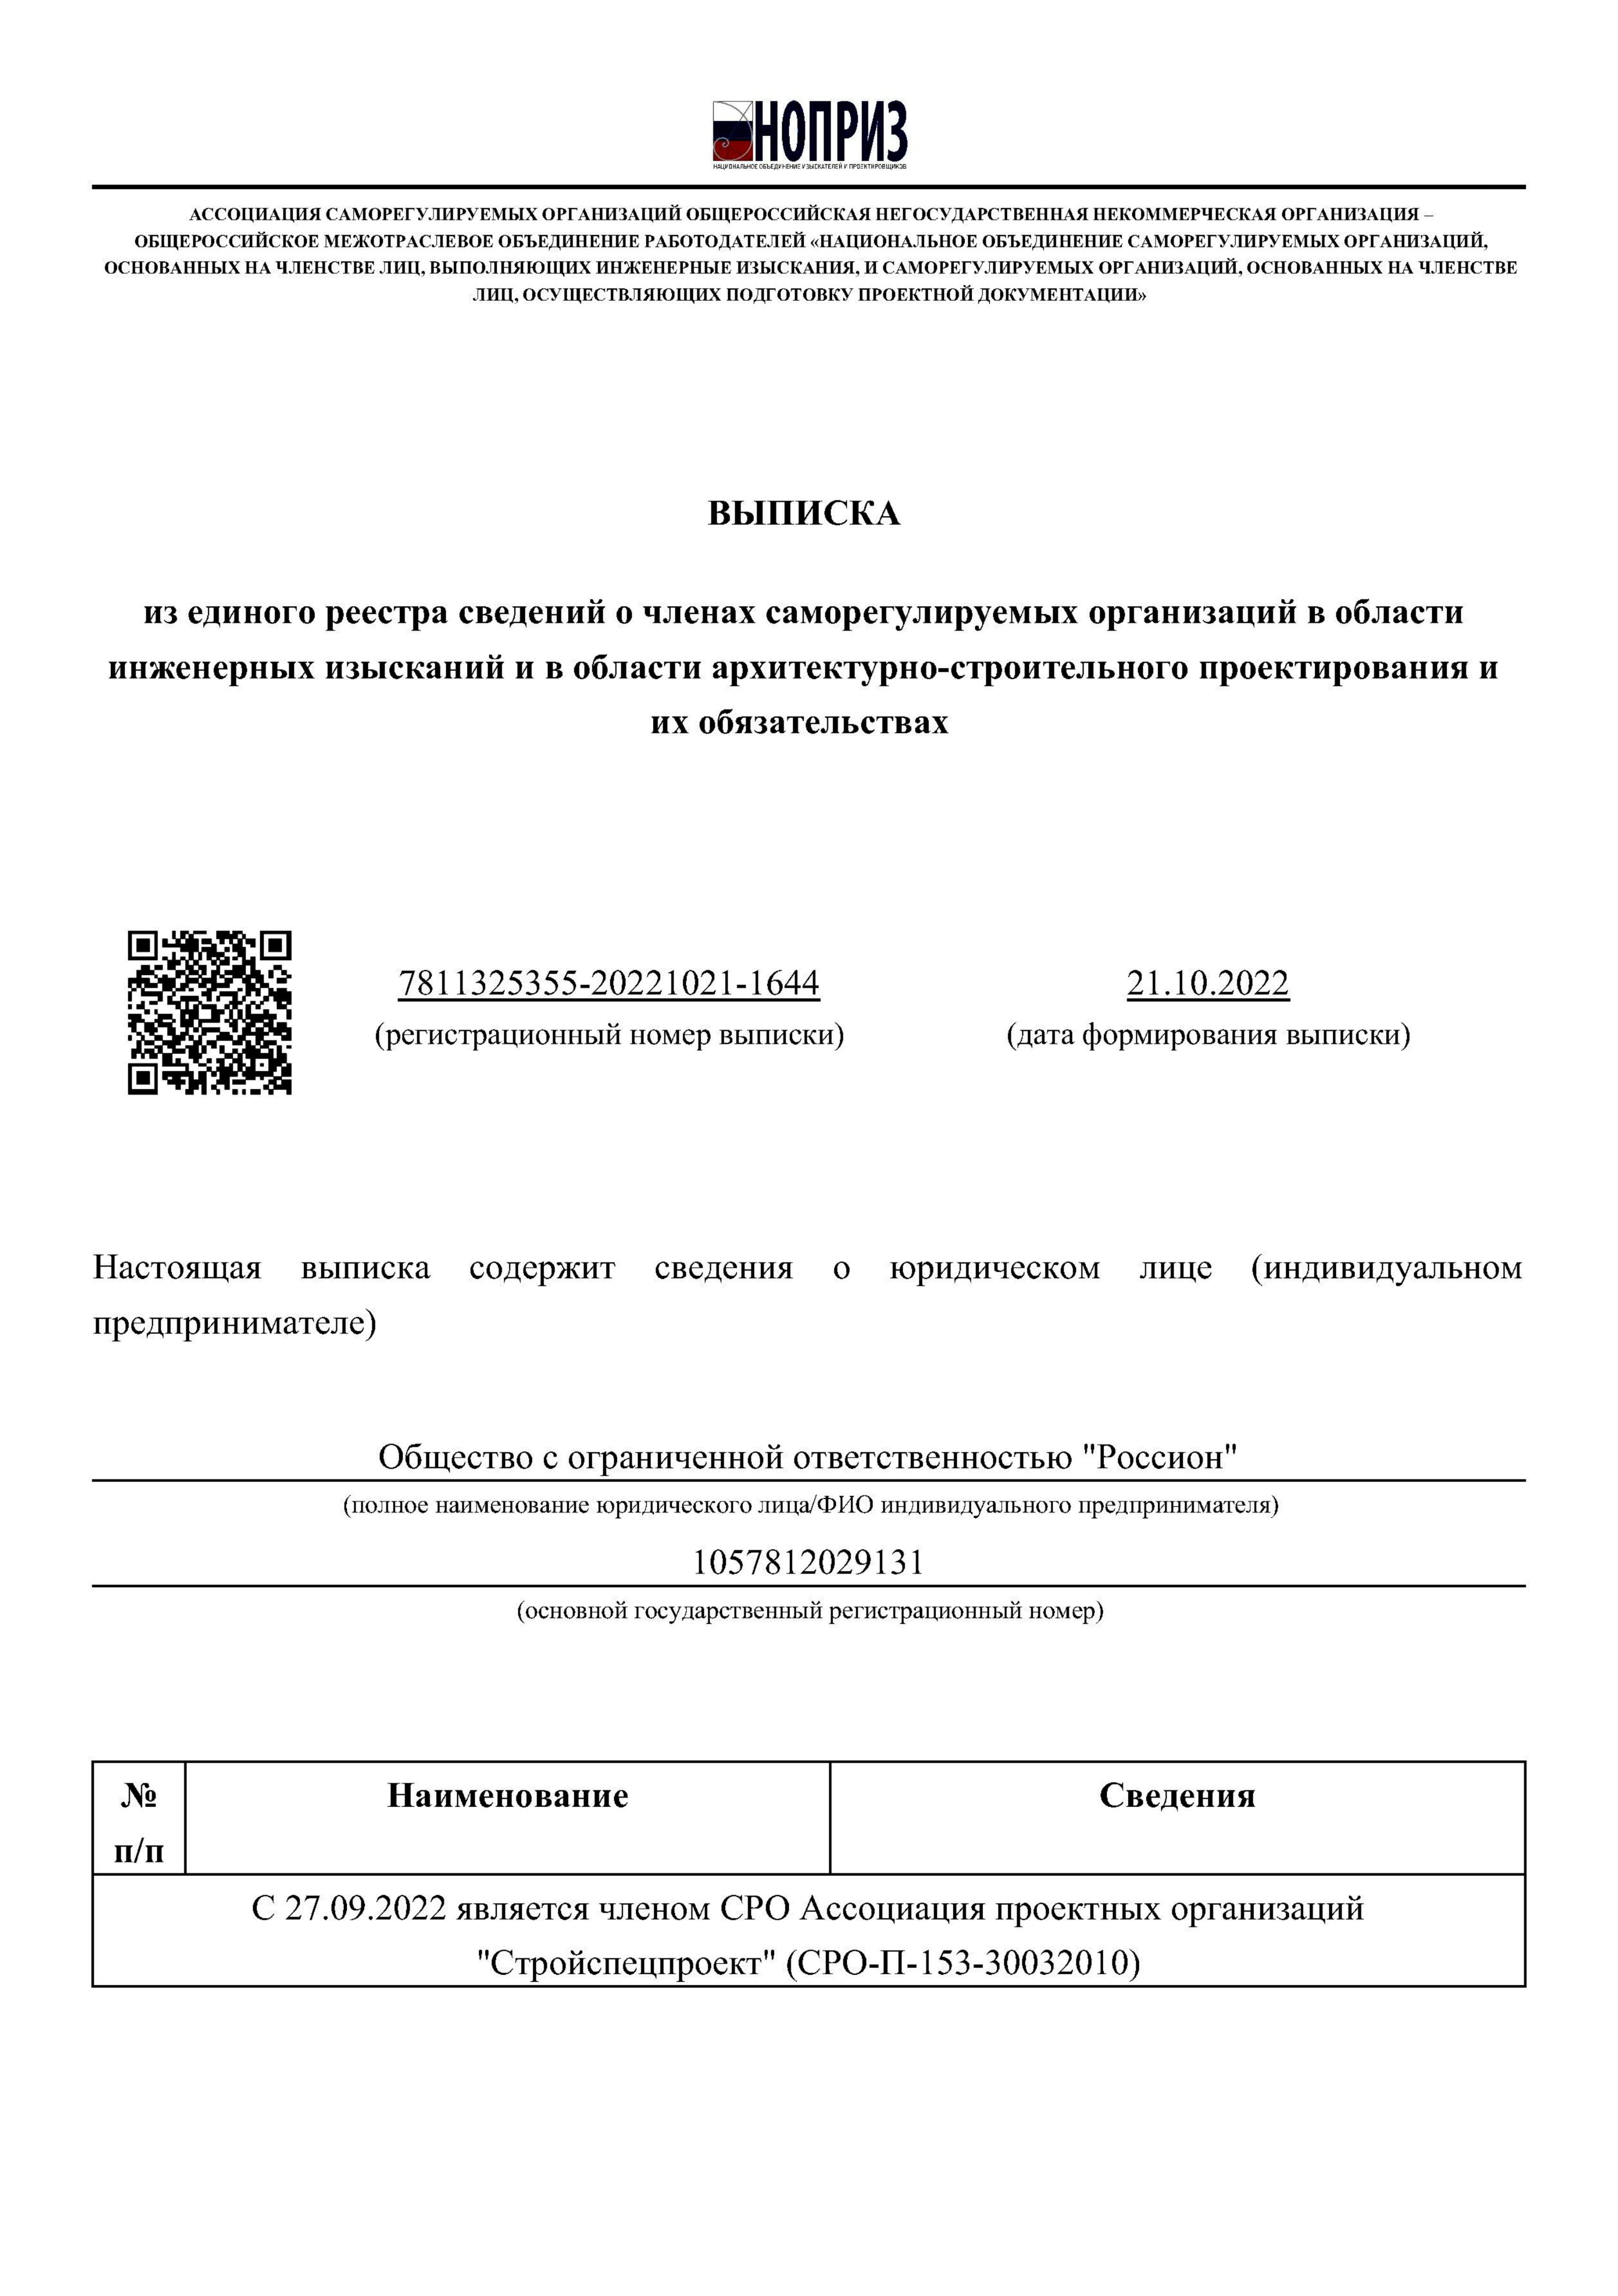 Сертификат члена СРО Ассоциация проектных организаций «Стройспецпроект»